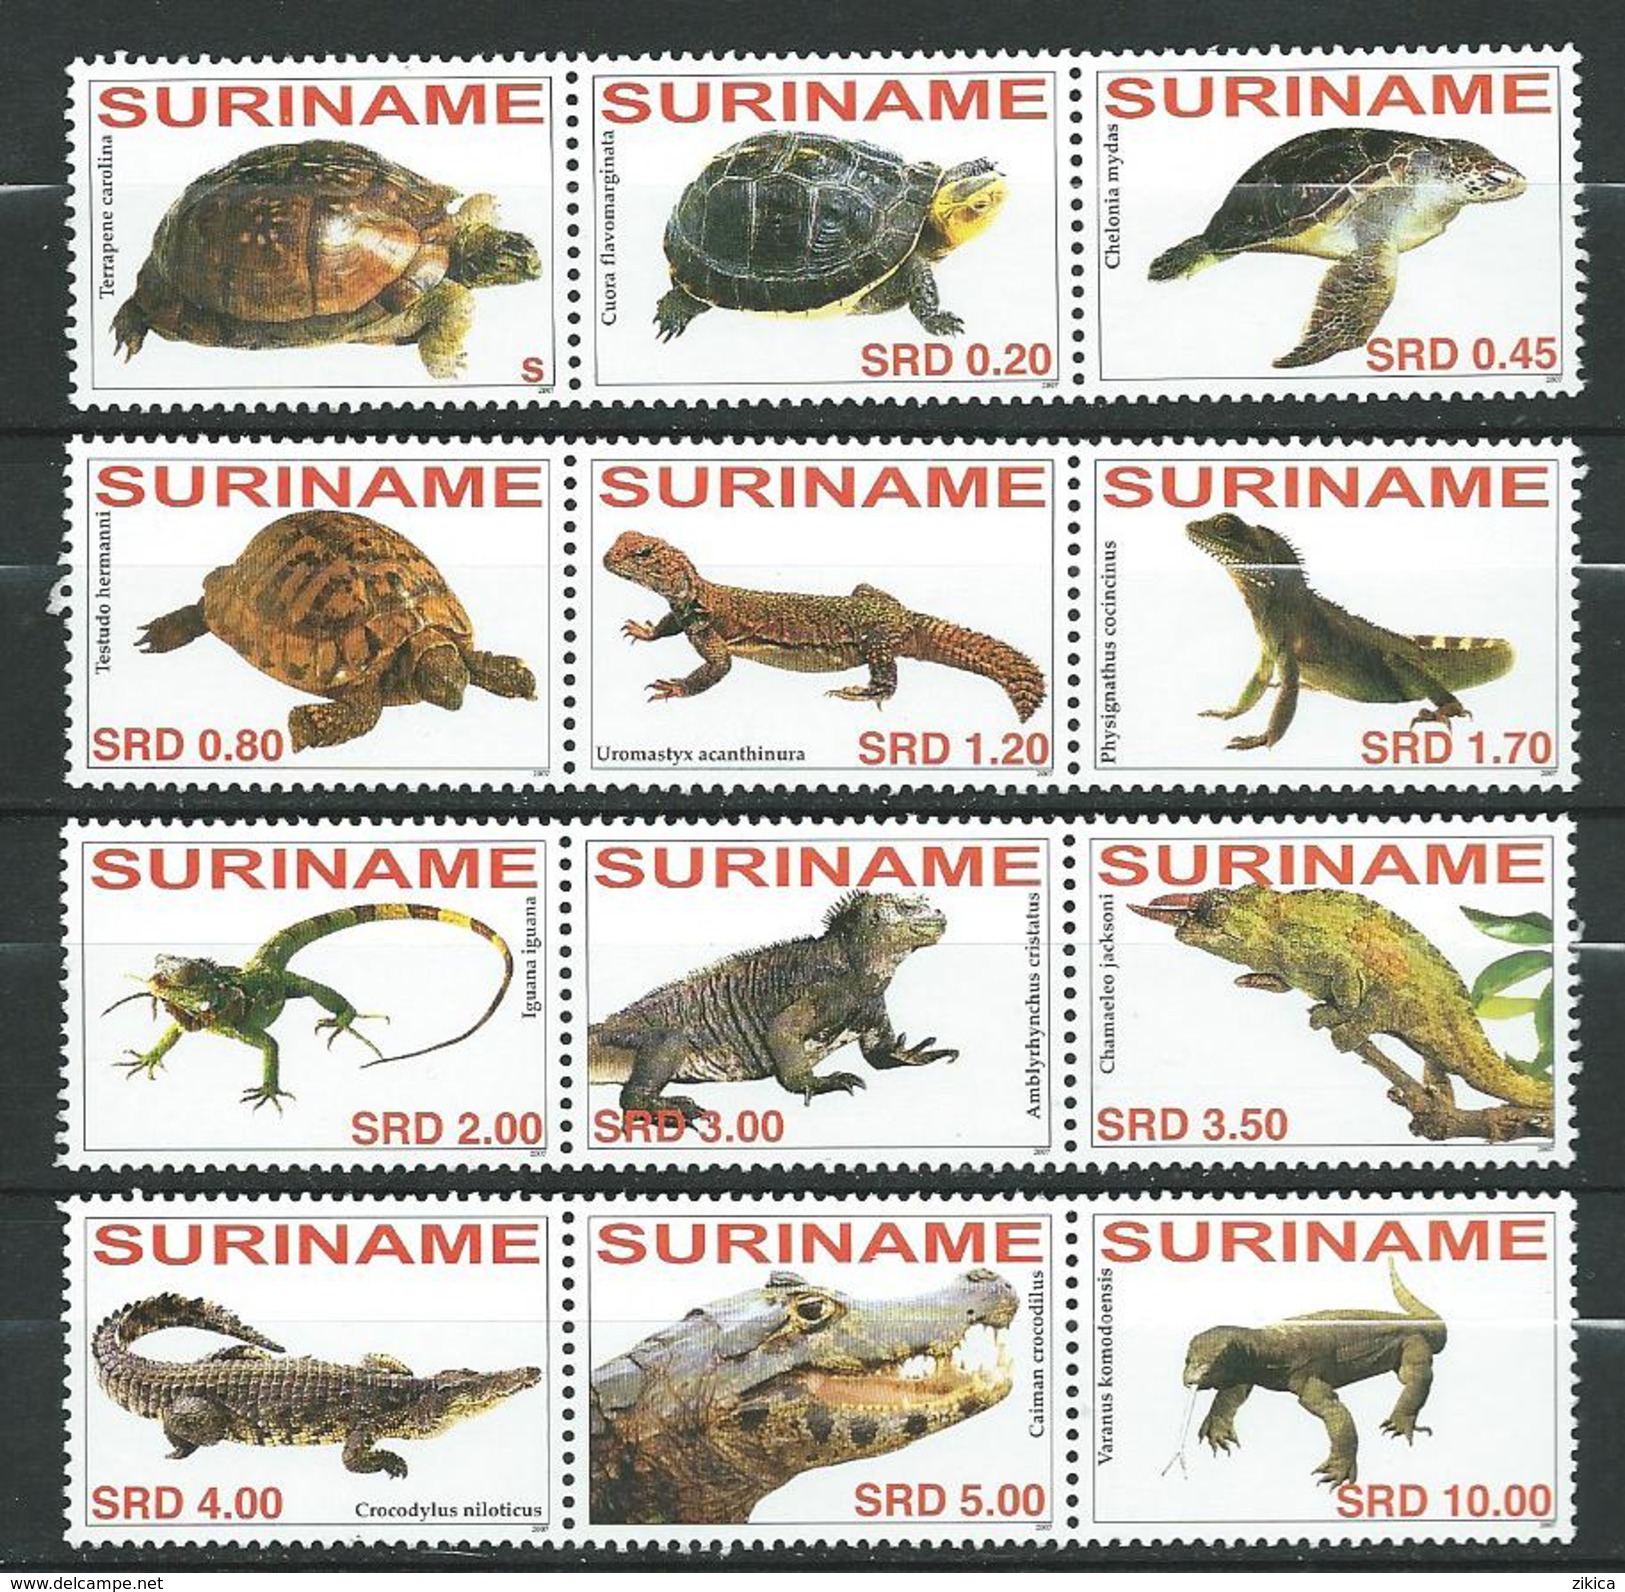 Surinam Suriname 2007 Fauna - Reptiles.Lizards.Crocodilians.Turtles.MNH - Surinam